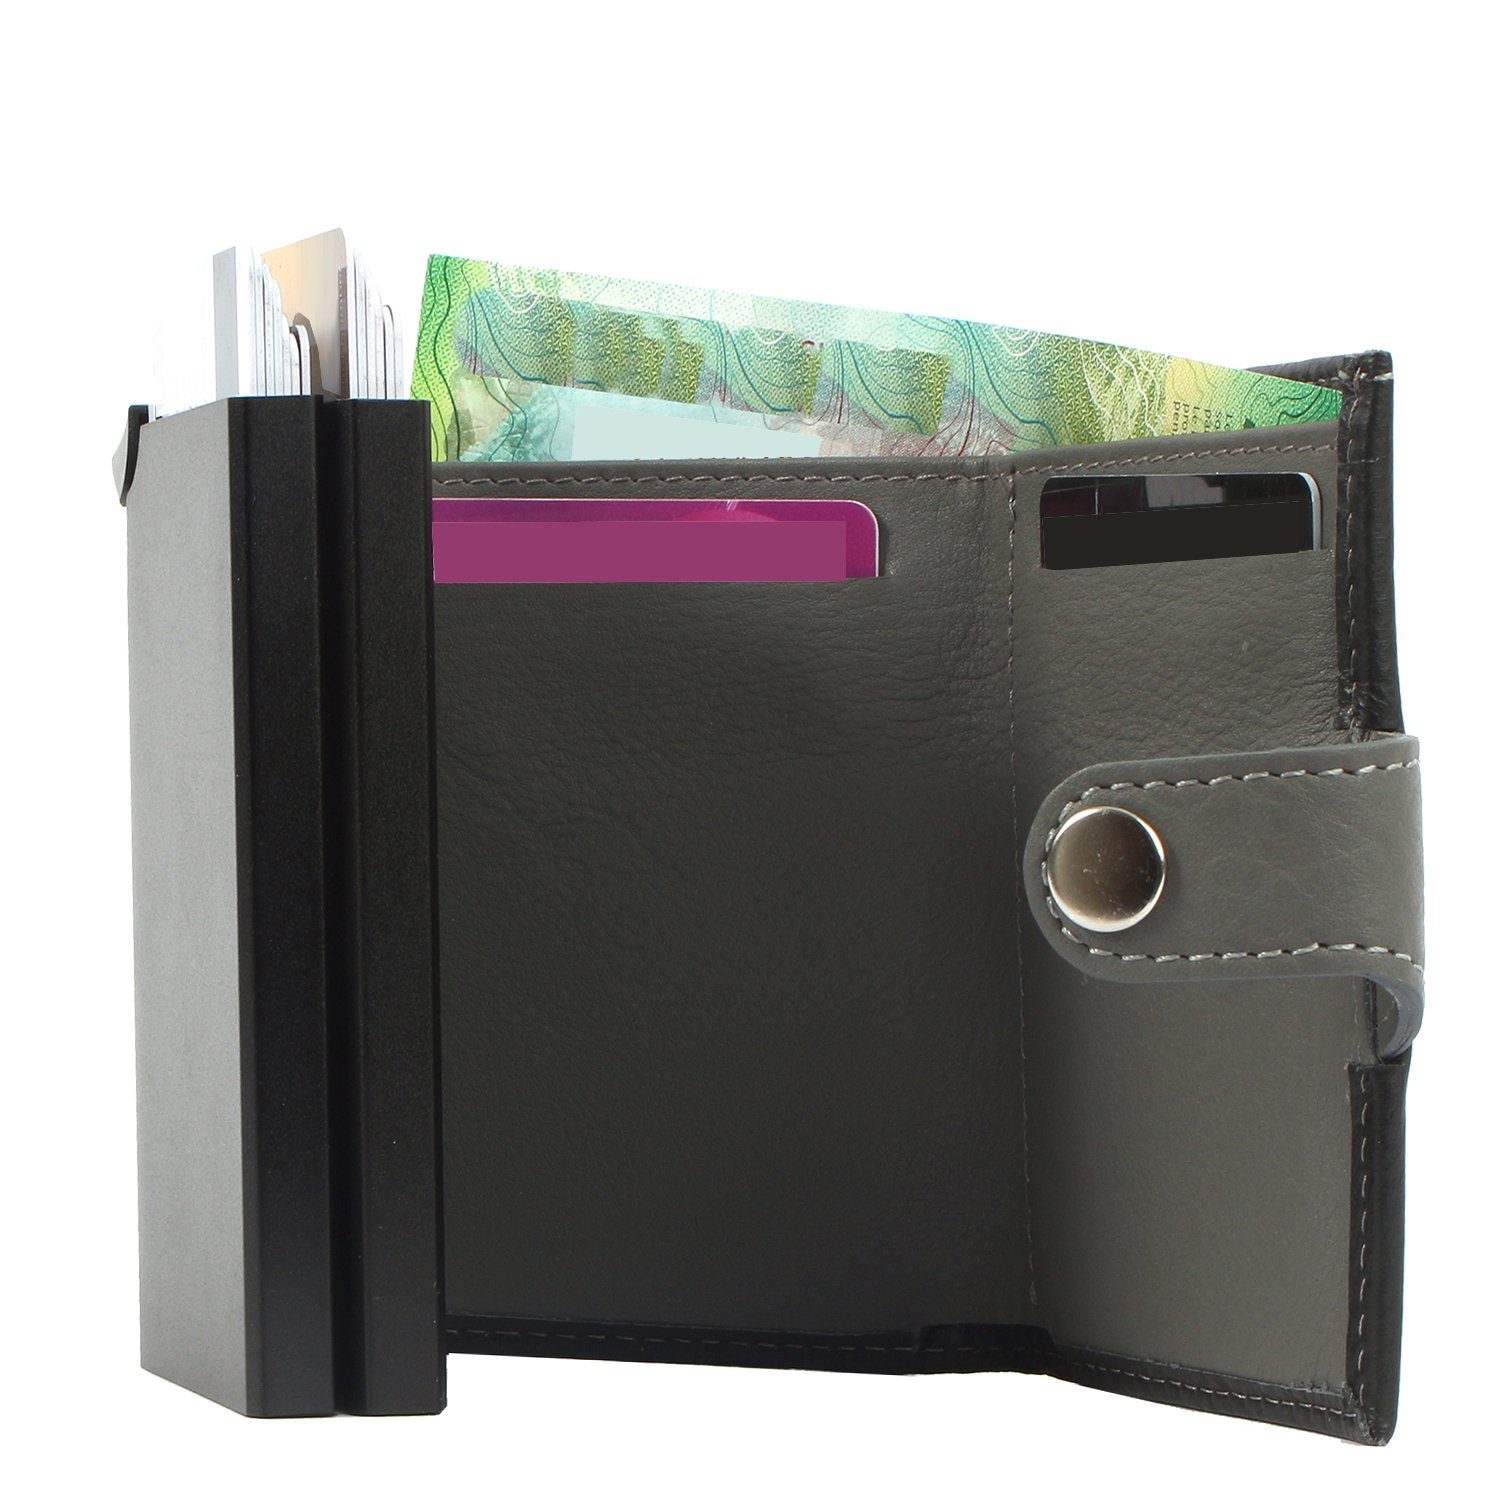 Margelisch Mini Geldbörse RFID Kreditkartenbörse Upcycling Leder leather, double noonyu darkbrown aus